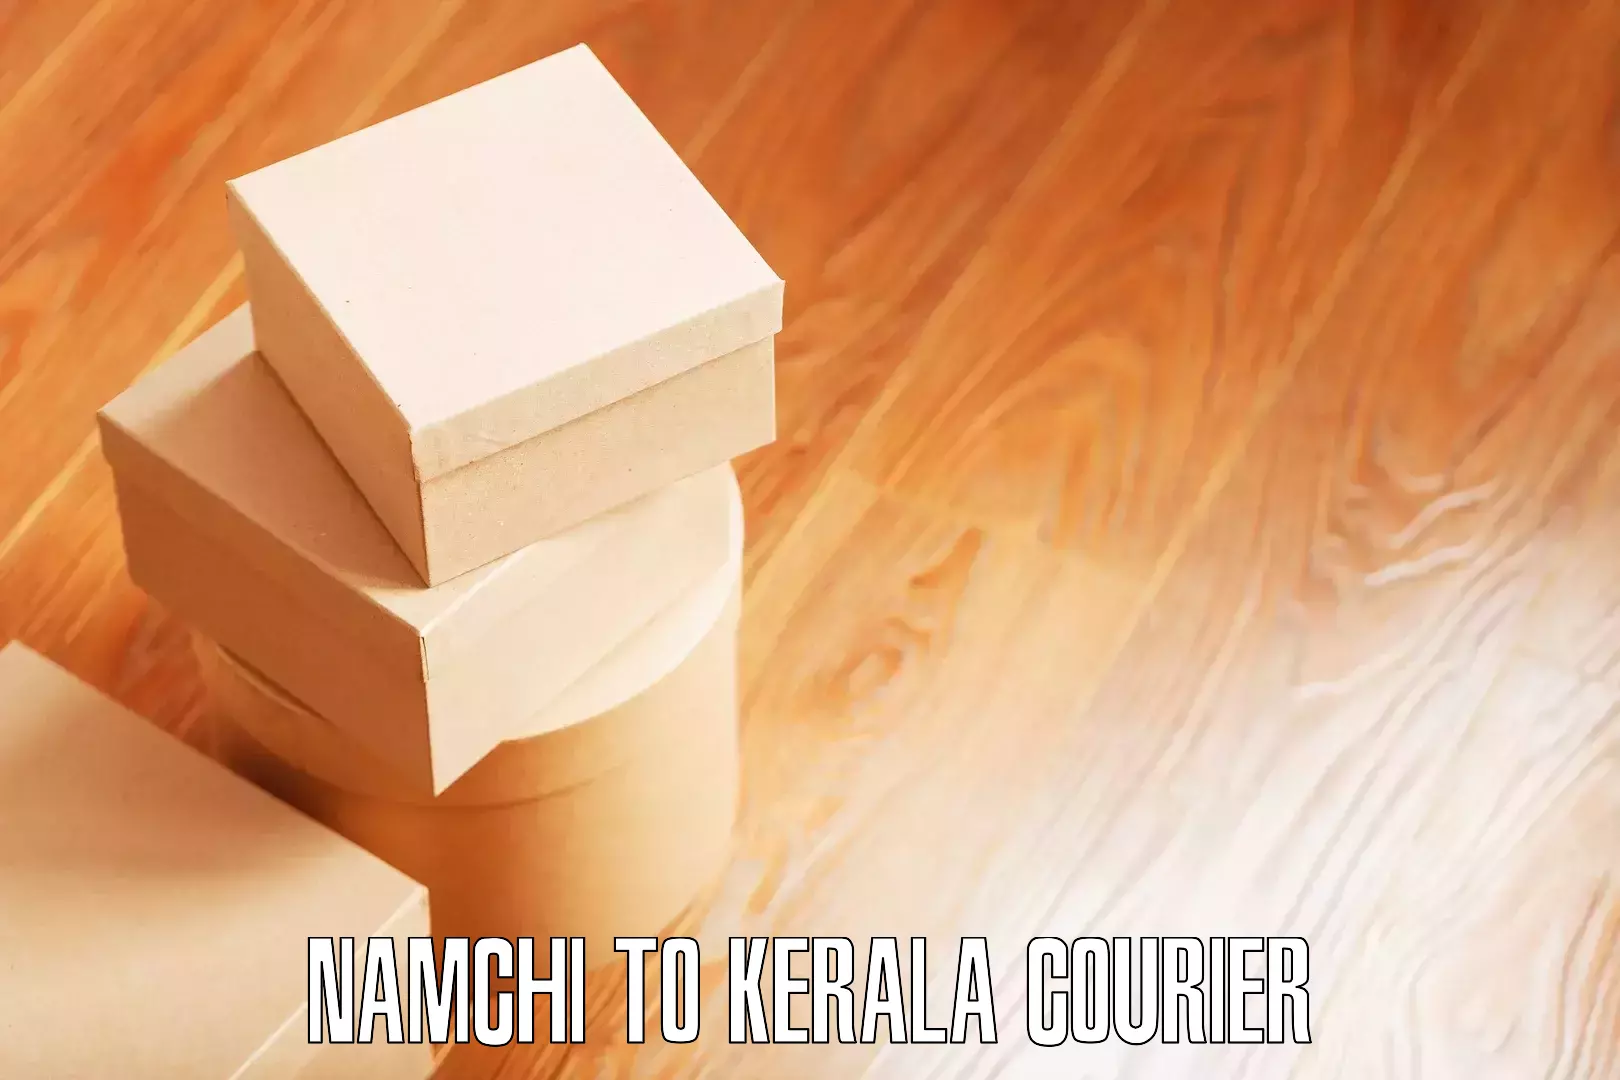 Home shifting experts Namchi to Kerala